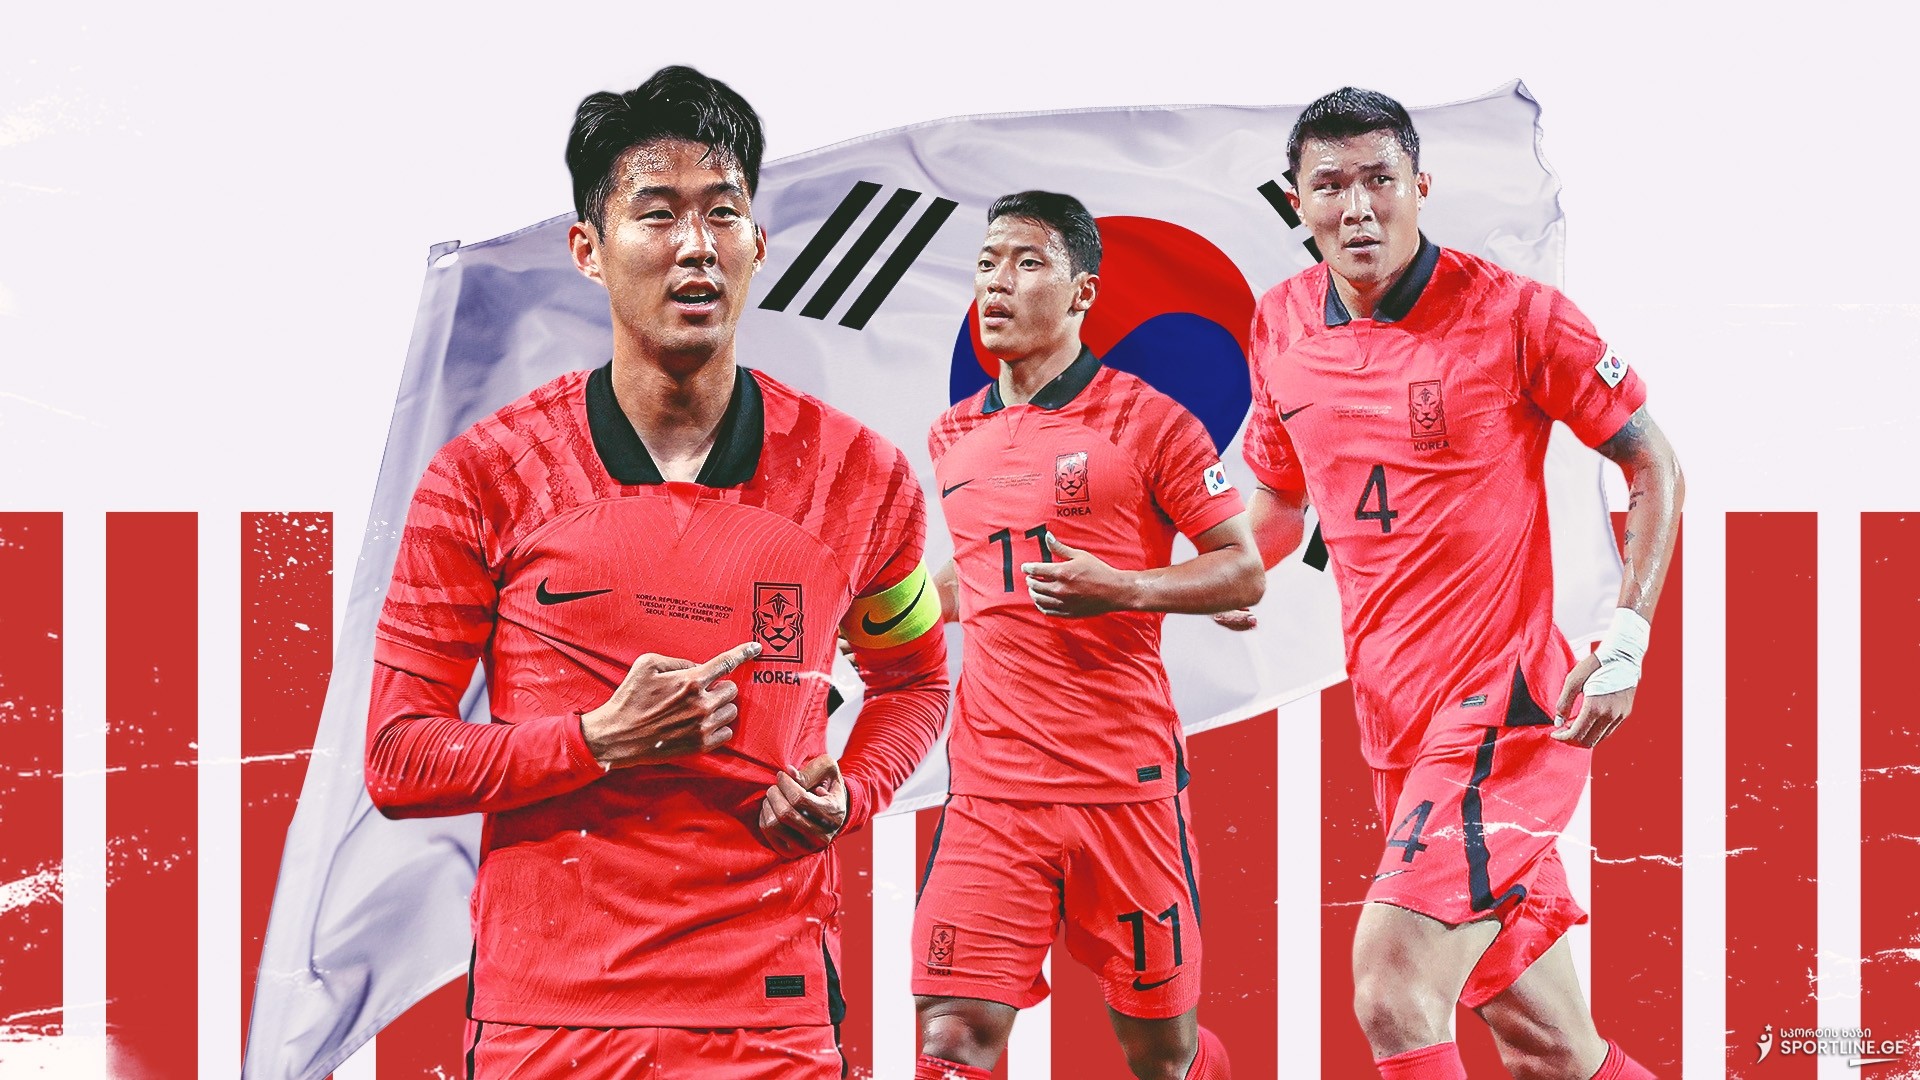 ყველაზე ეგოისტურად გამოცხადებული შემადგენლობა ფეხბურთის ისტორიაში - როგორ წარადგინა სამხრეთ კორეამ მოთამაშეთა სია